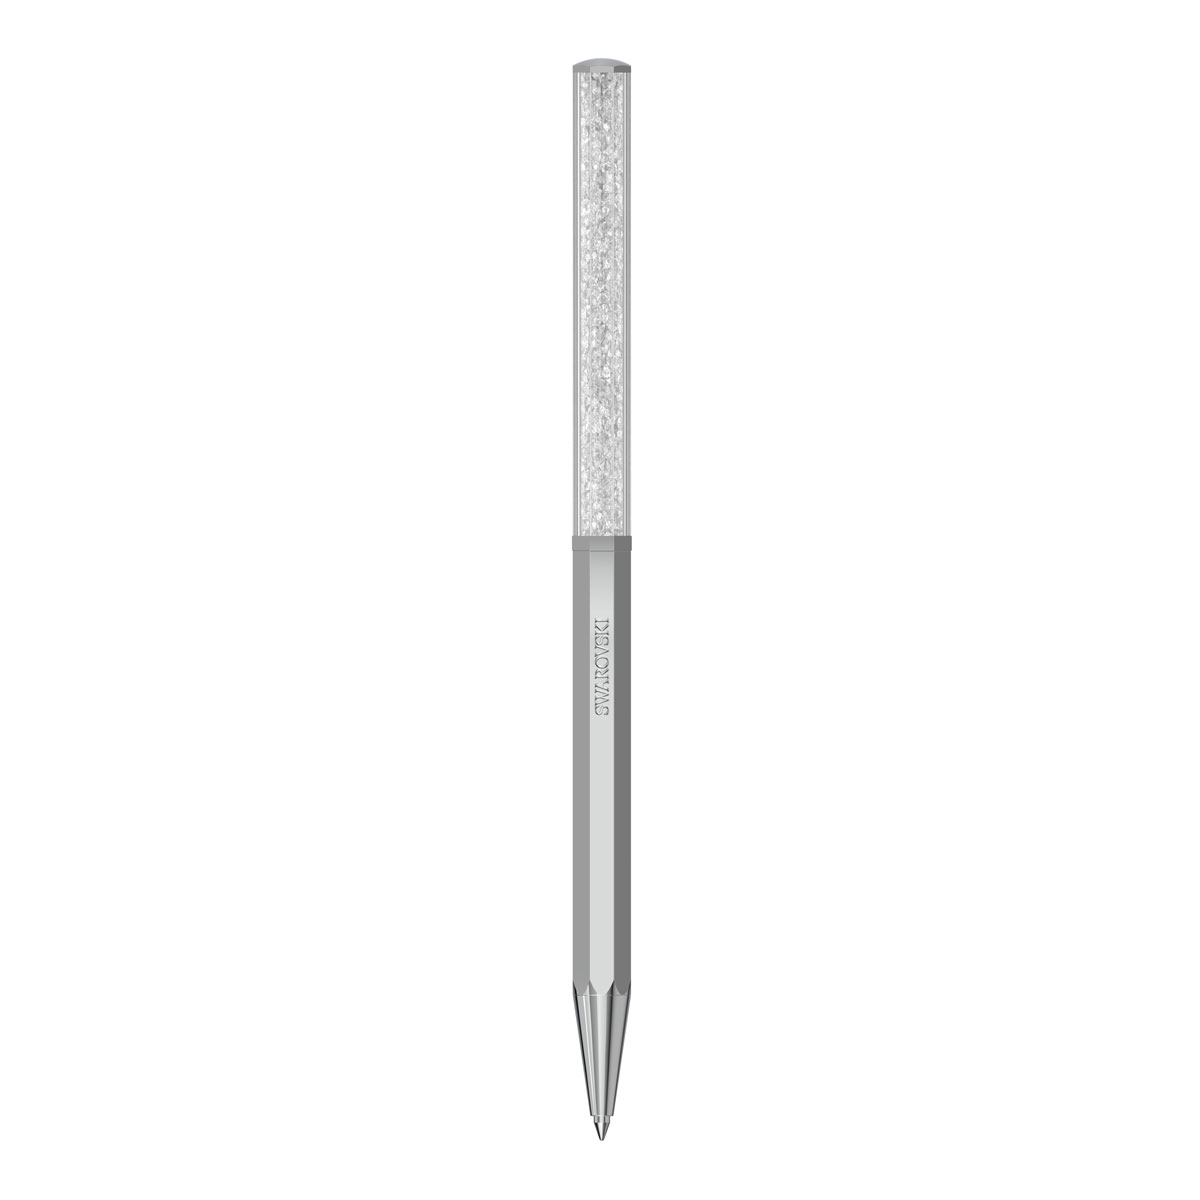 Swarovski Crystalline and Chrome Ballpoint Pen